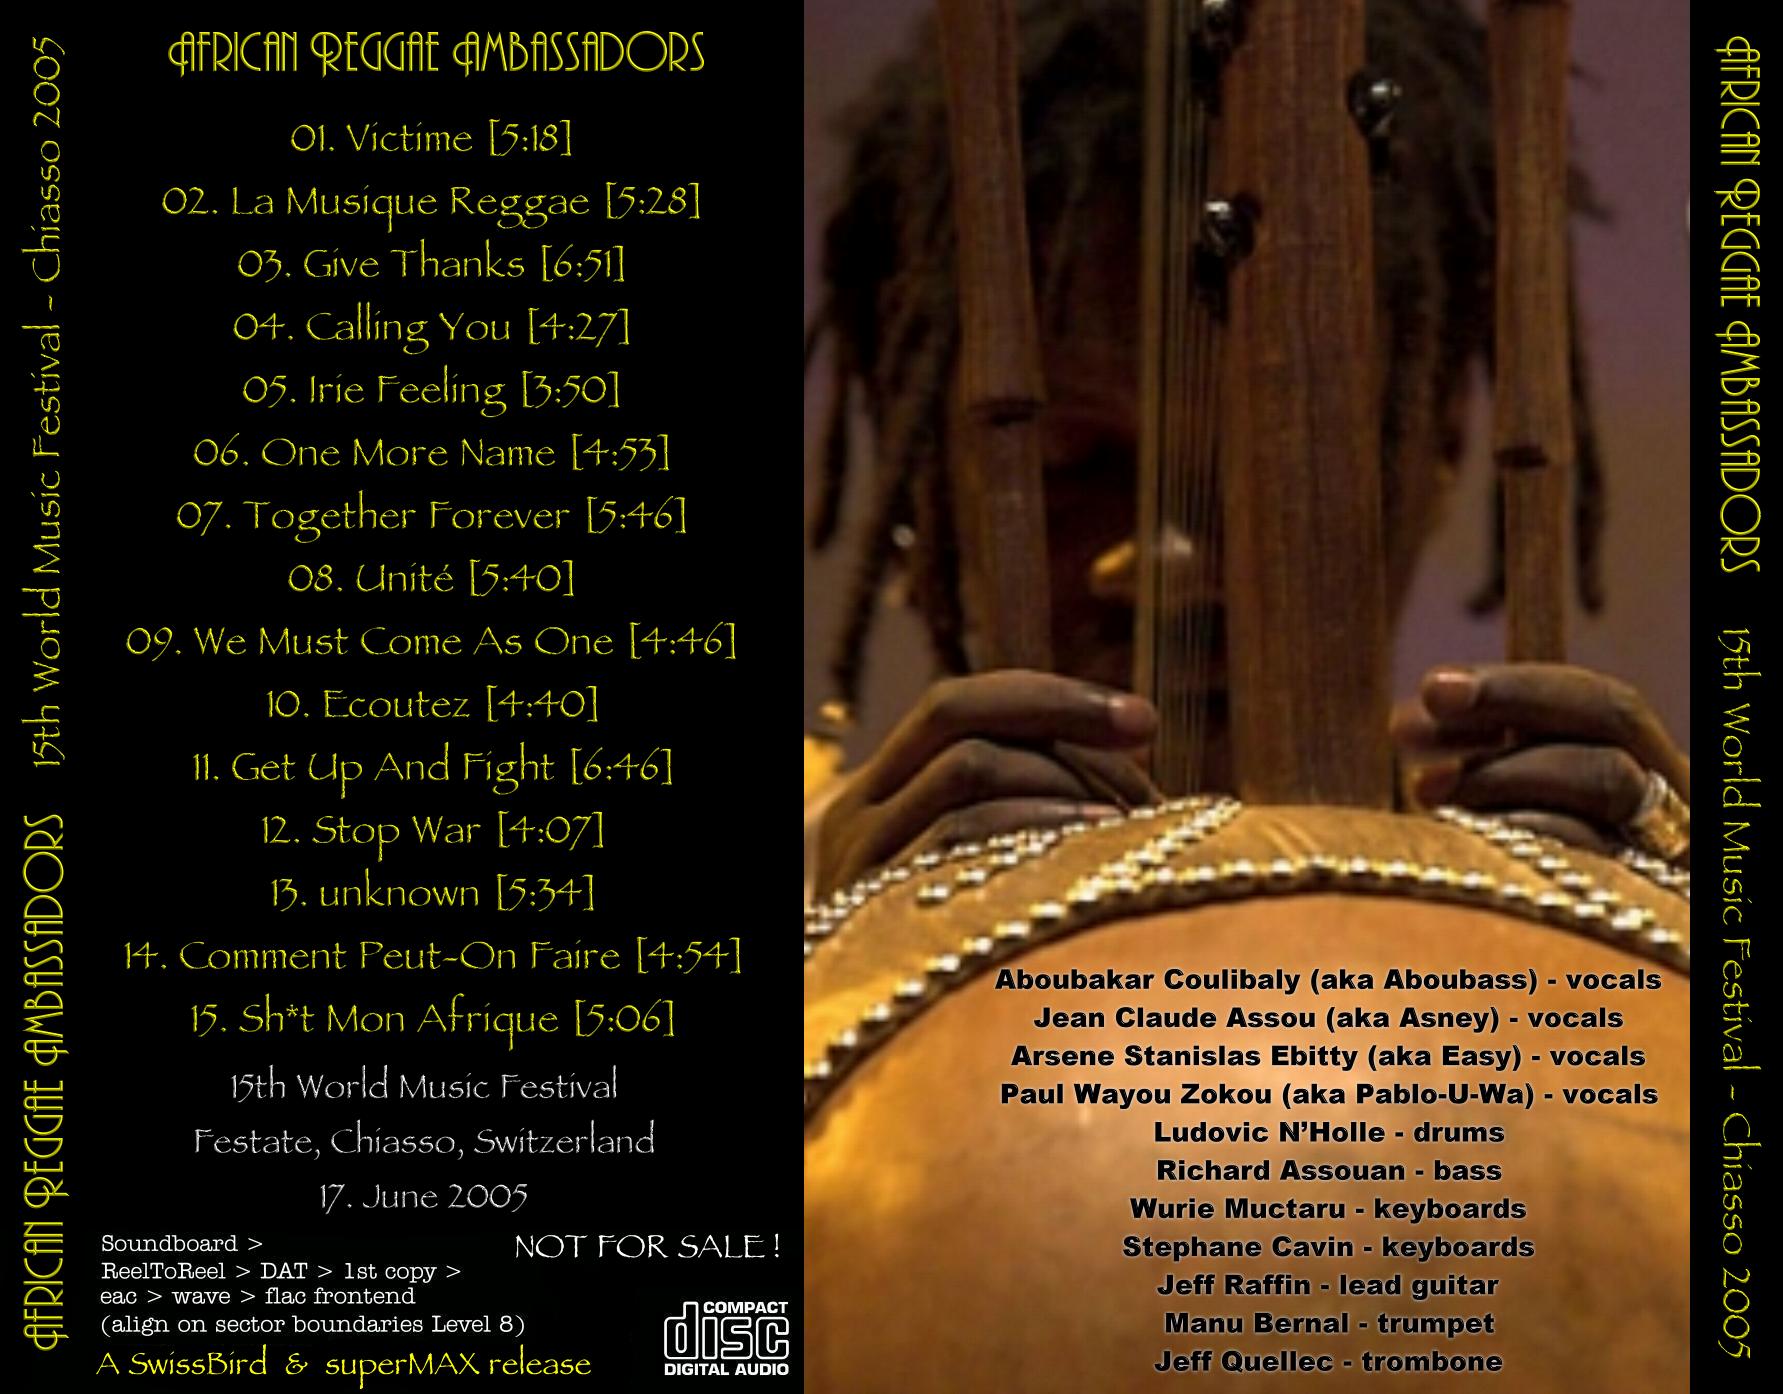 AfricanReggaeAmbassadors2005-06-17WorldMusicFestivalChiassoSwitzerland (1).JPG